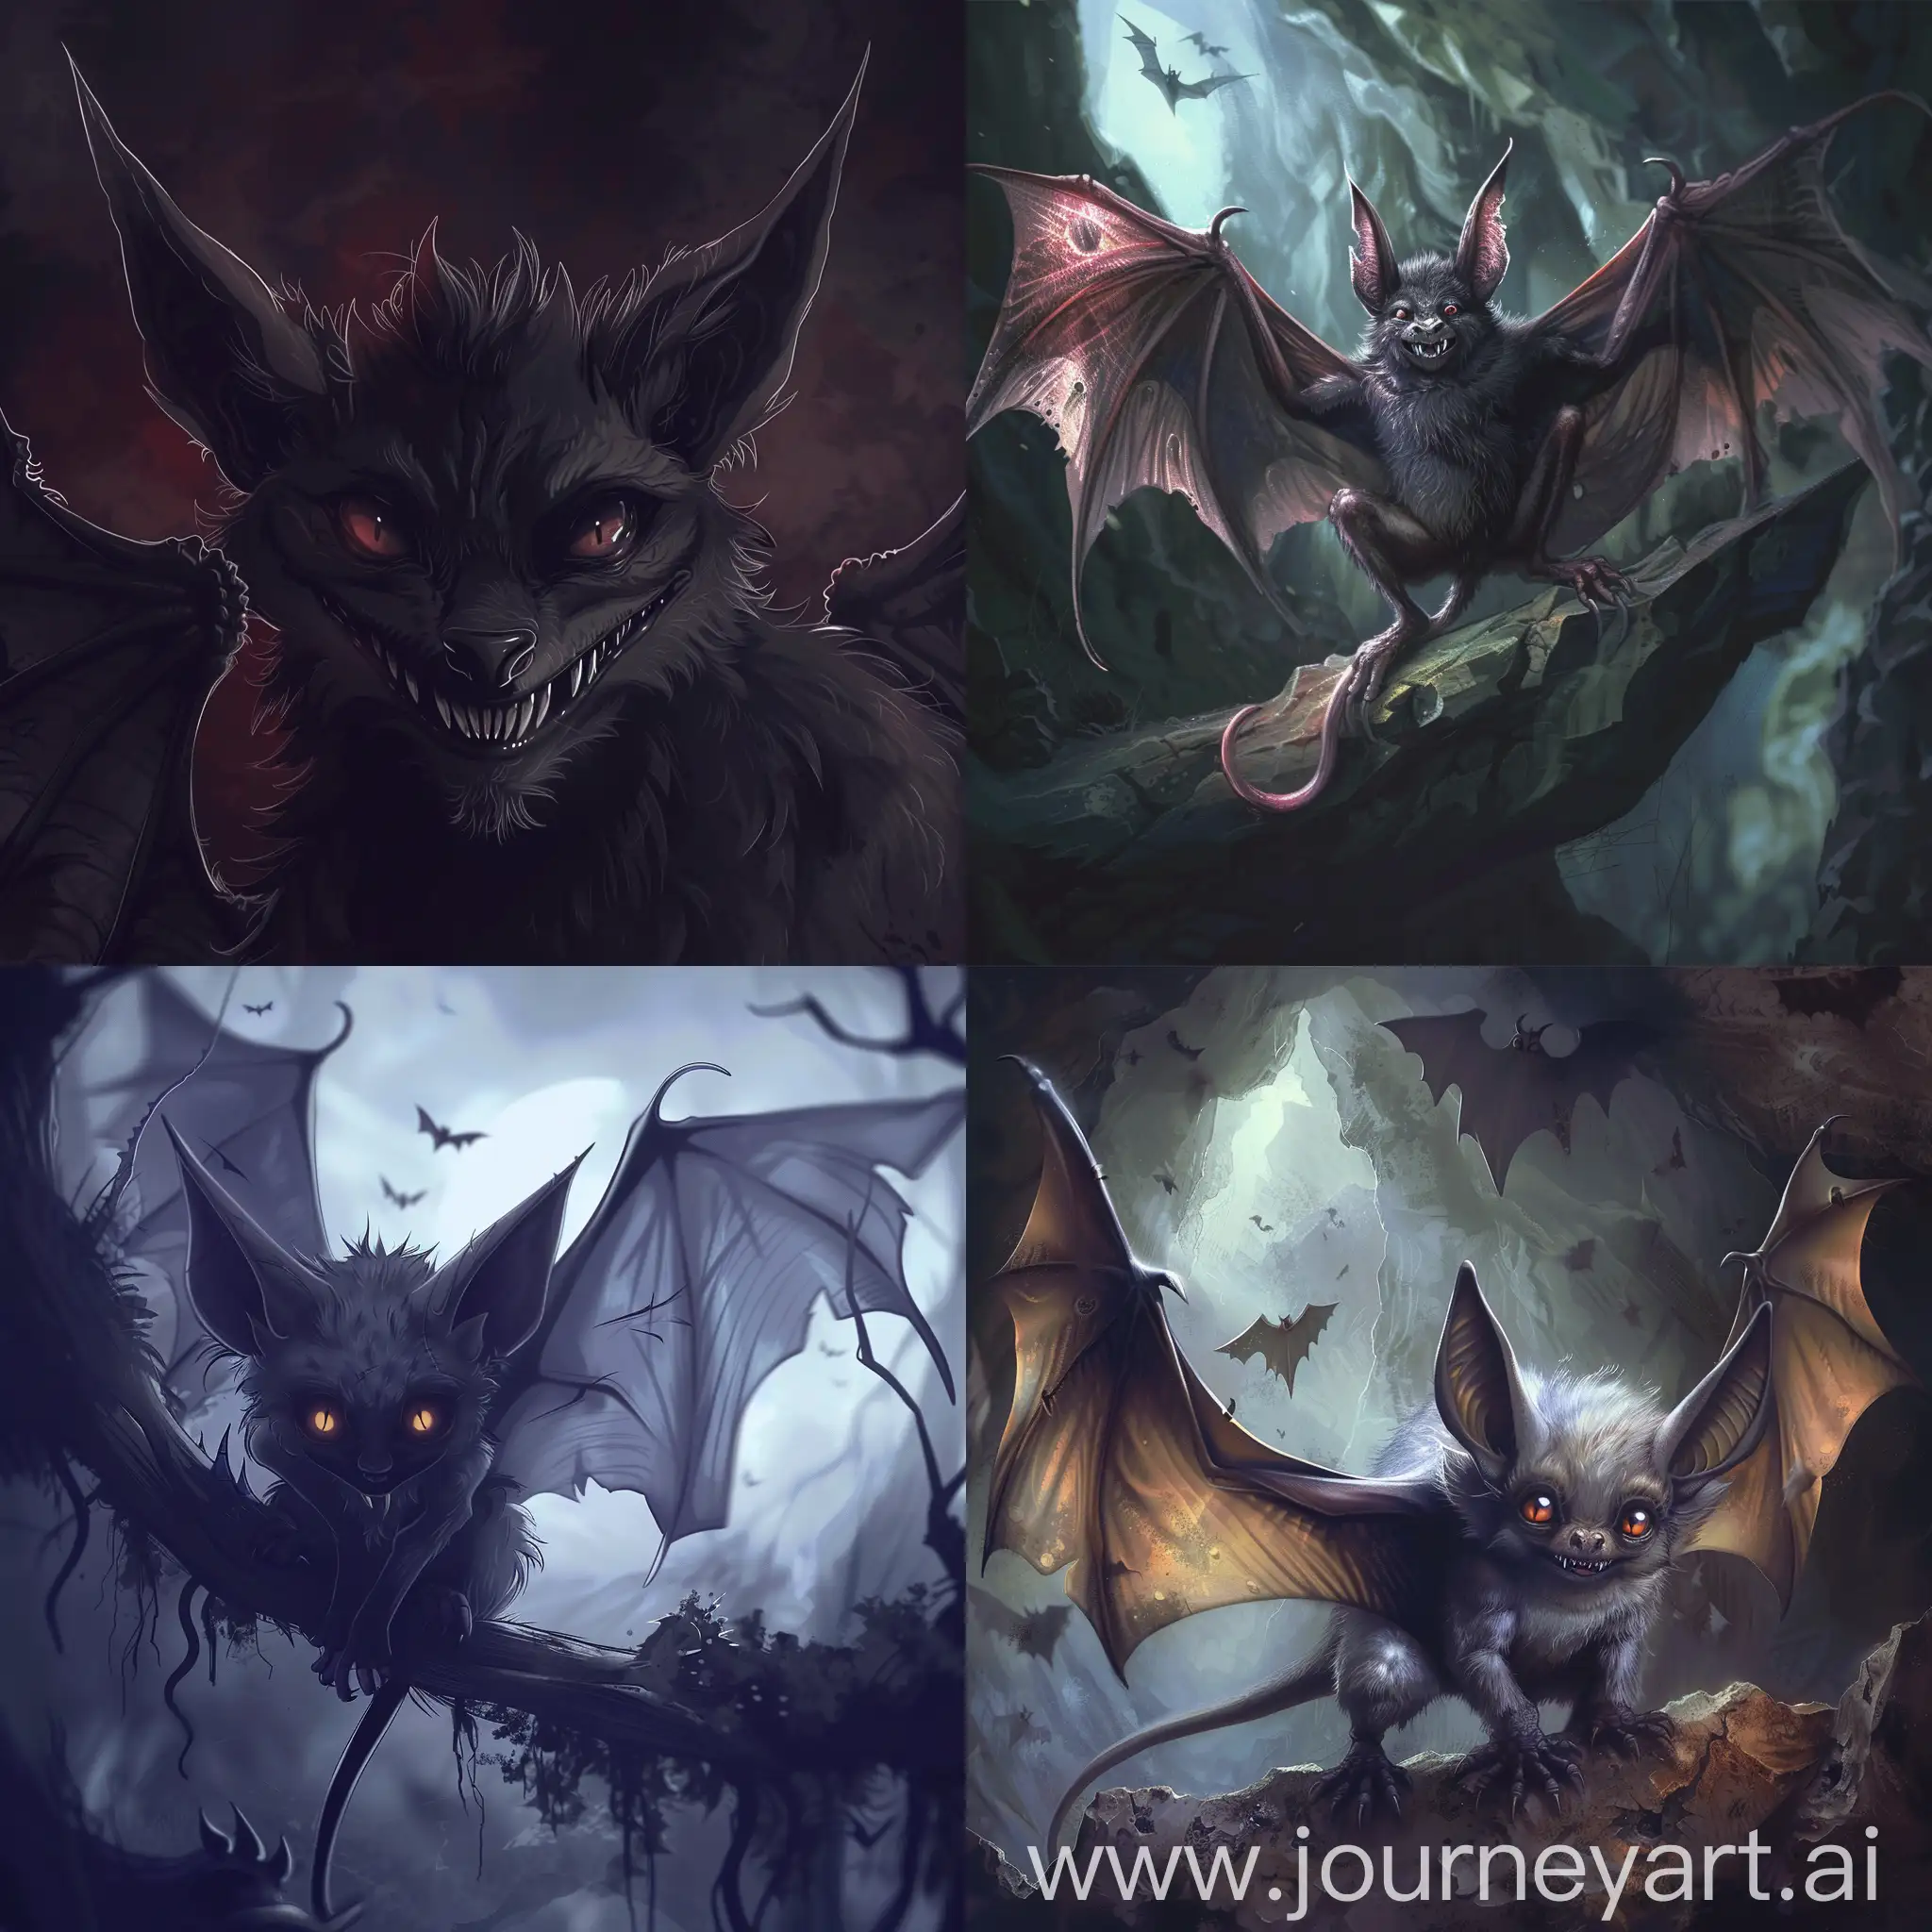 Dark fantasy, gothic horror, anime style, vampire bat